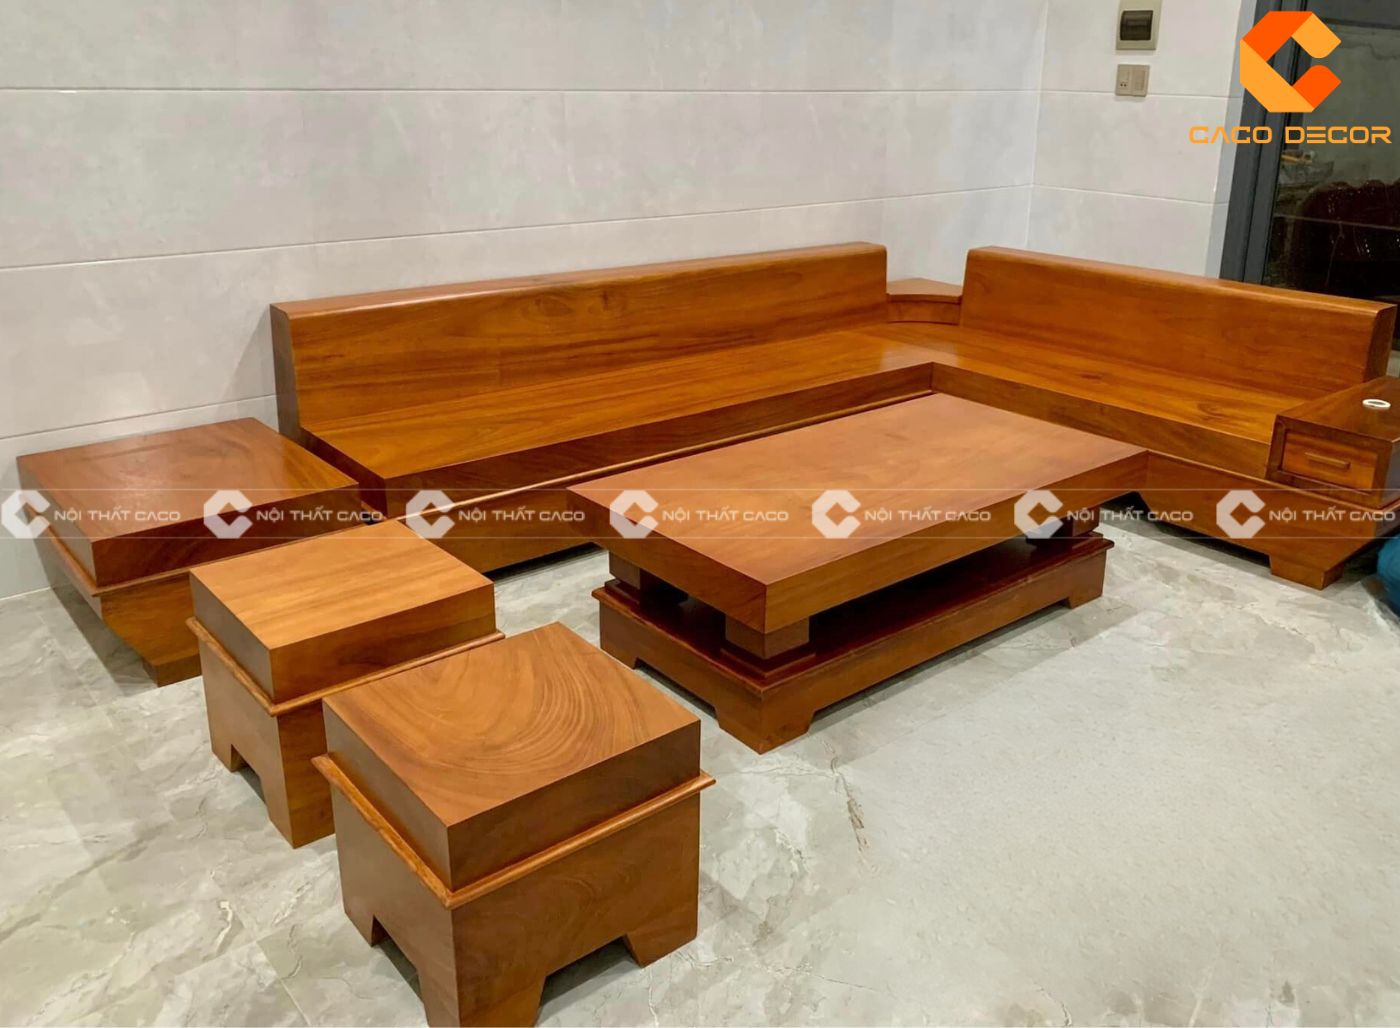 BST mẫu sofa gỗ gõ đỏ bền đẹp, bán chạy tại NỘI THẤT CACO 11